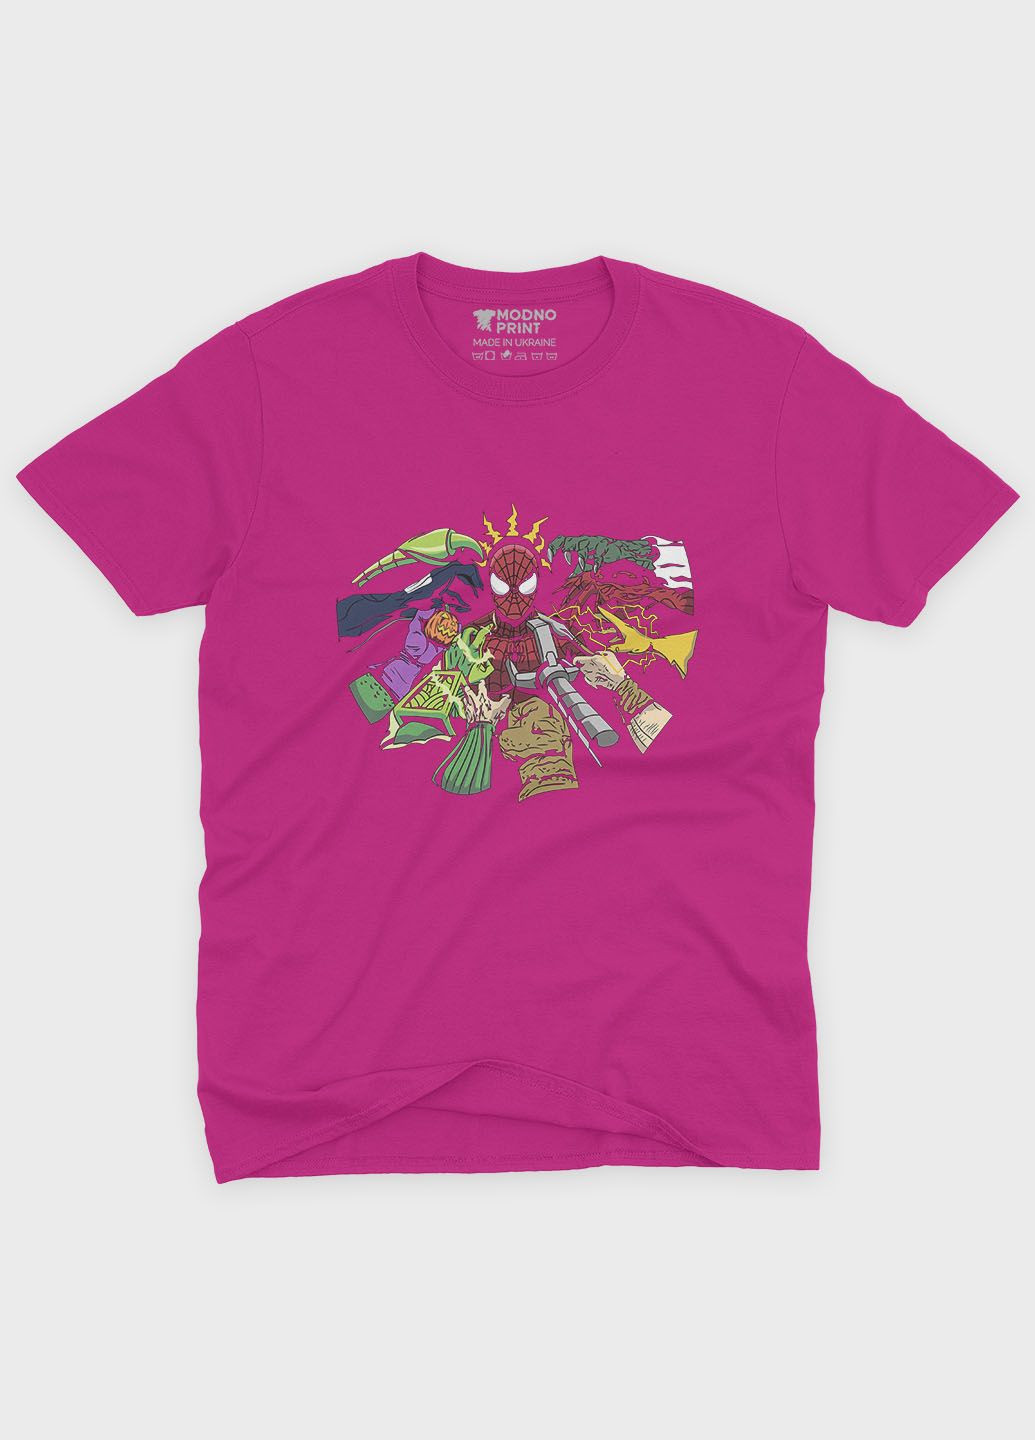 Розовая демисезонная футболка для девочки с принтом супергероя - человек-паук (ts001-1-fuxj-006-014-014-g) Modno